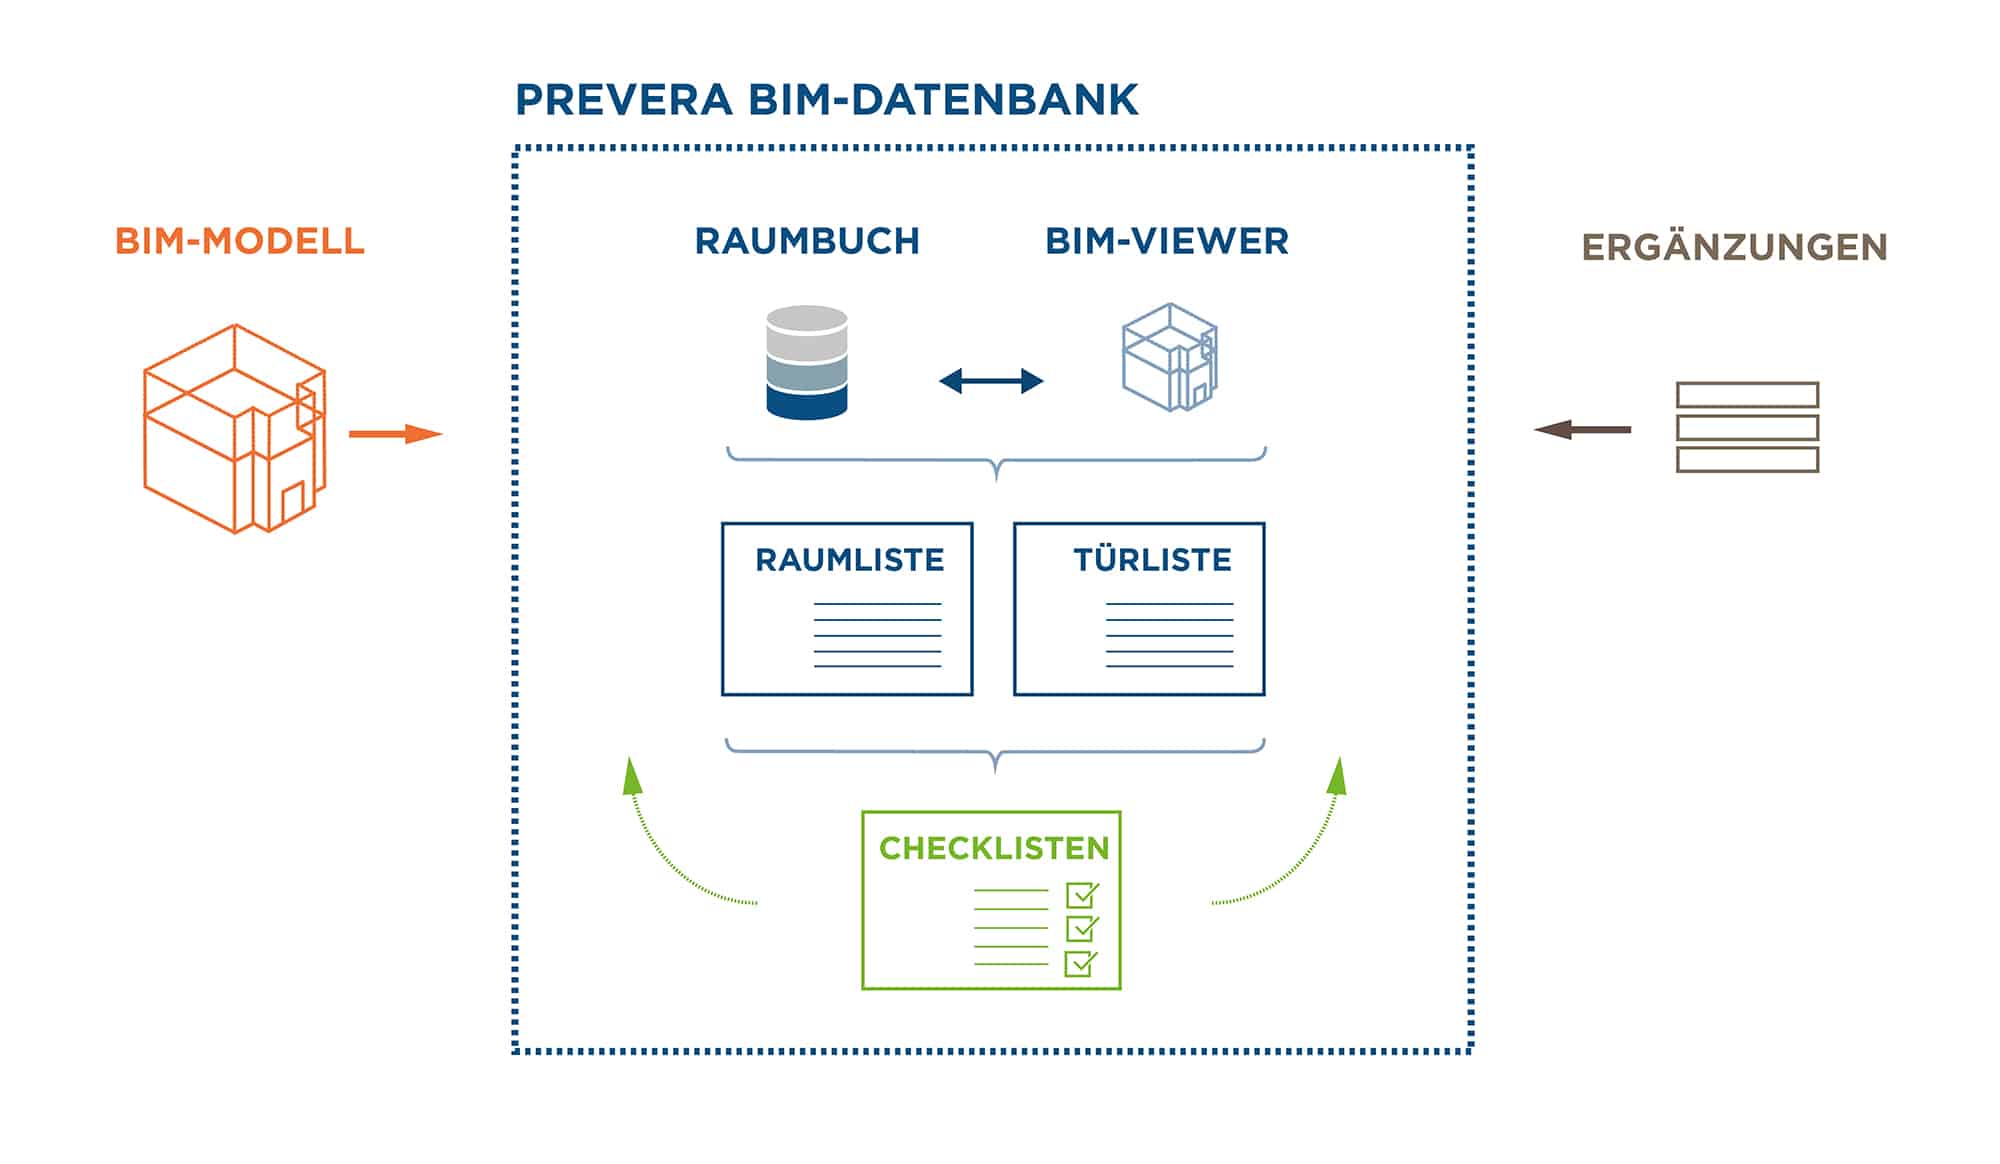 BIM-Datenbank plus Checklisten